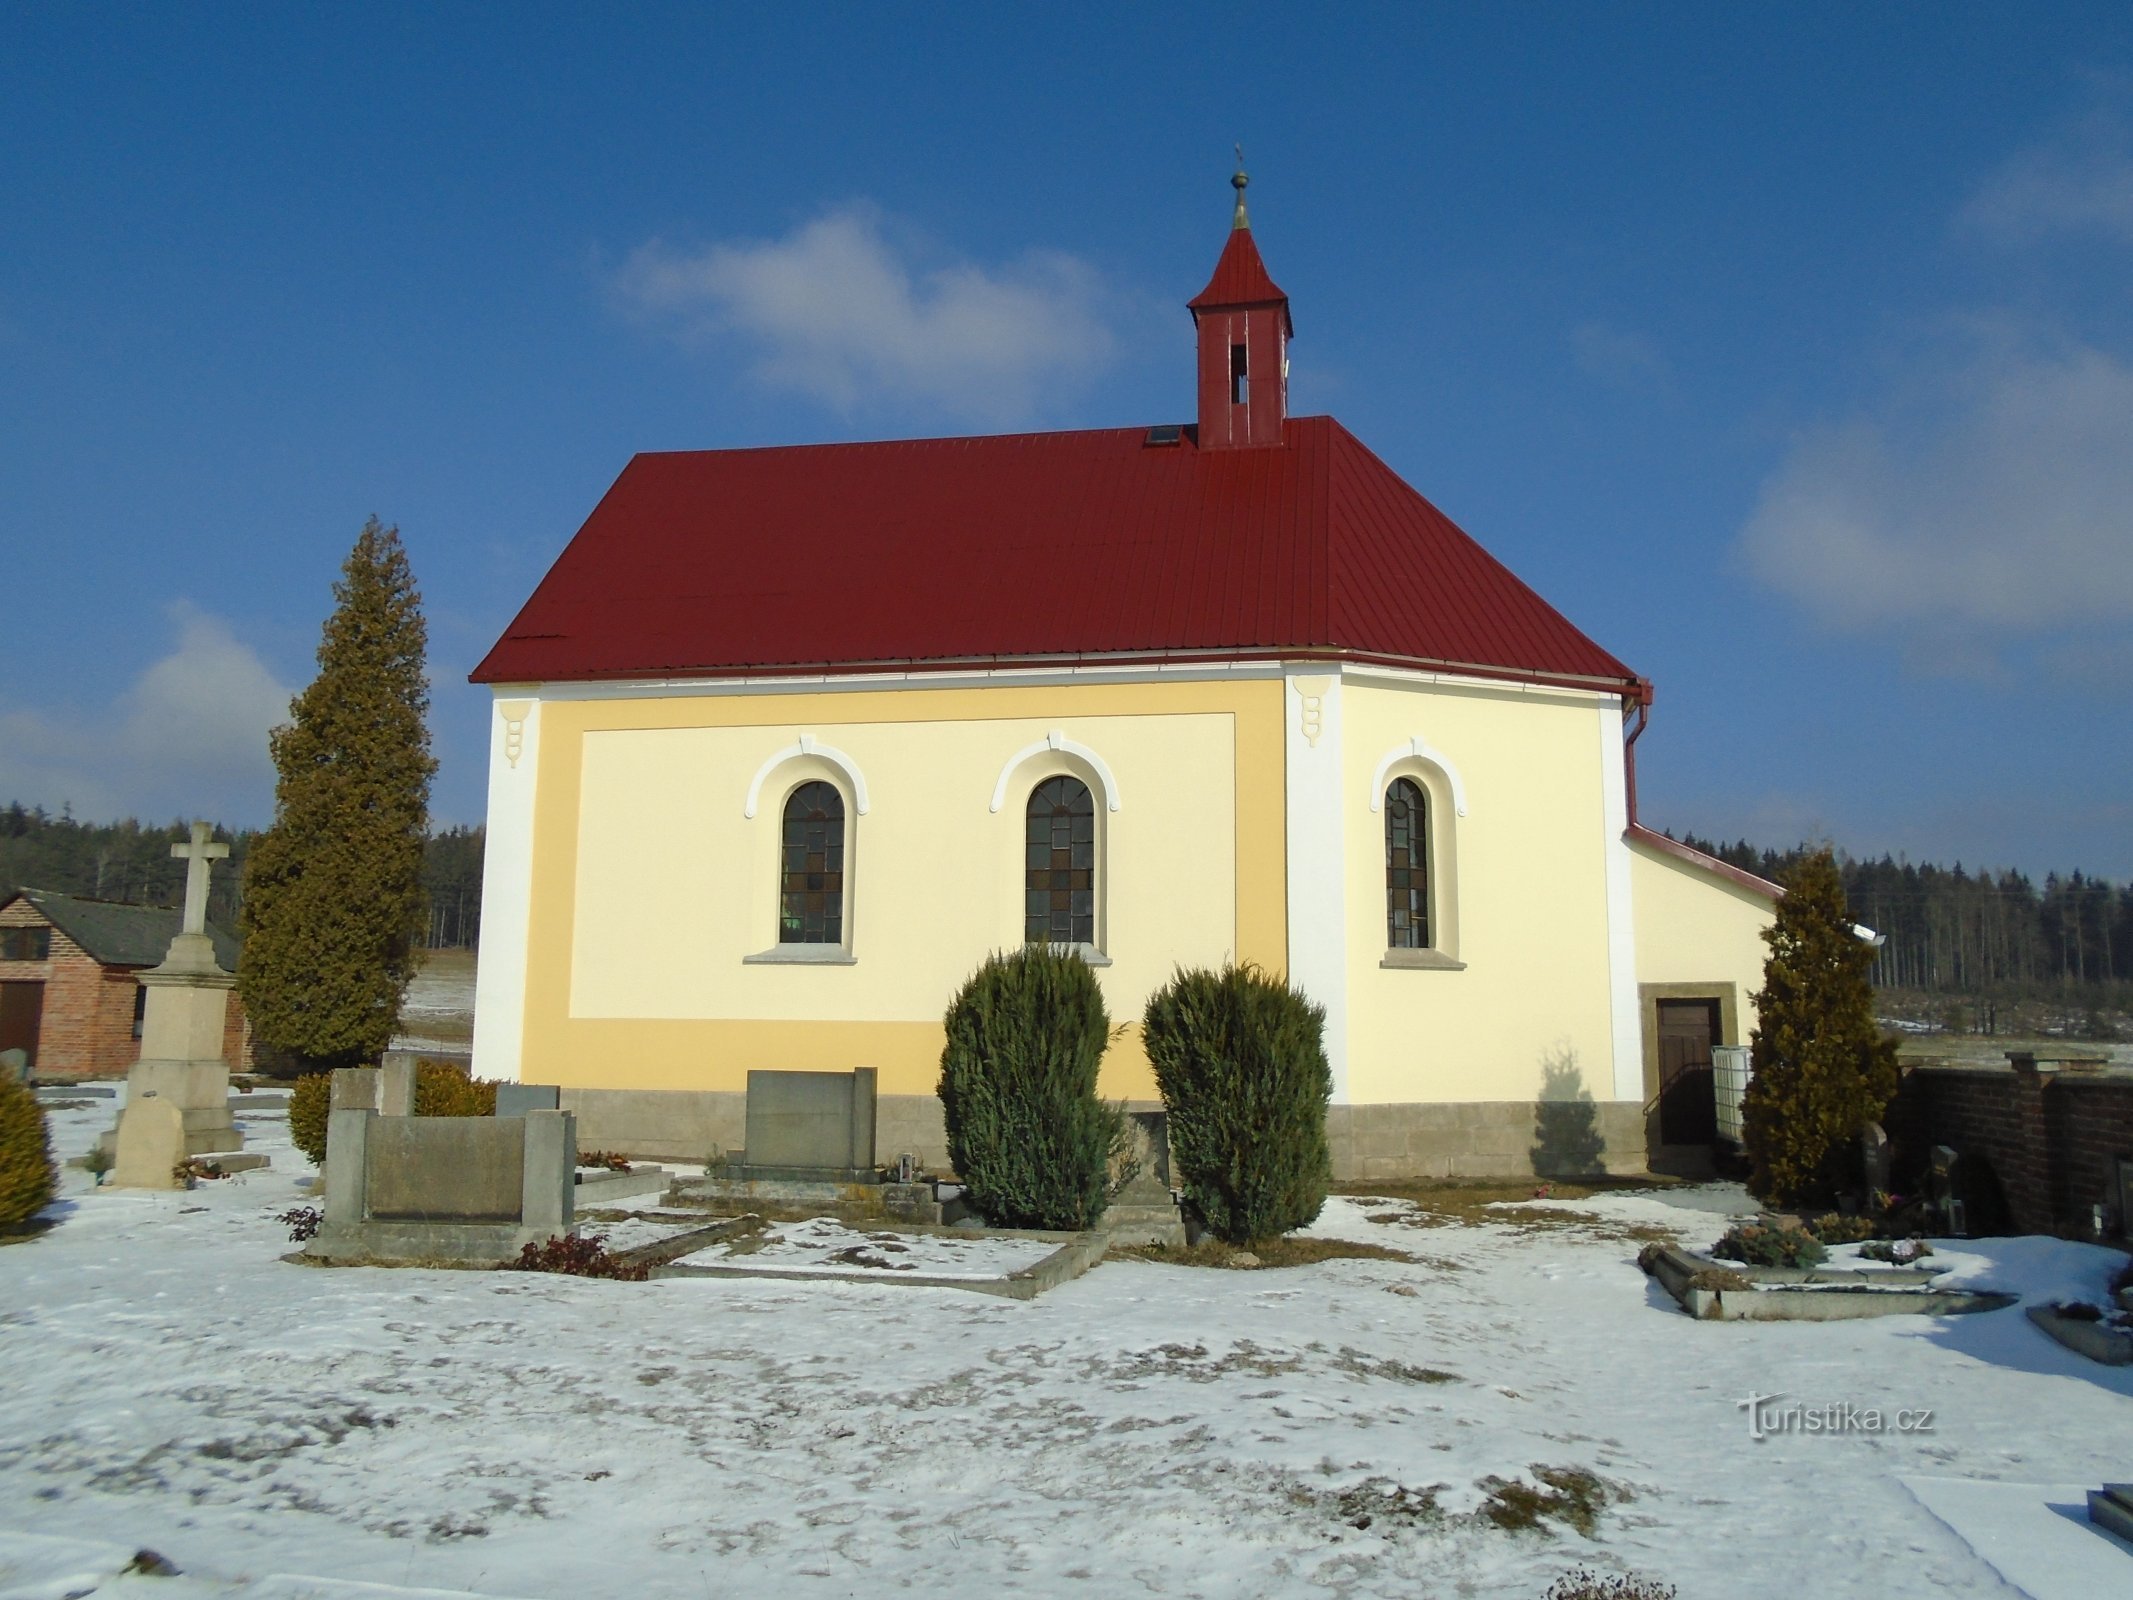 Hřbitovní kaple sv. Josefa (Proruby)